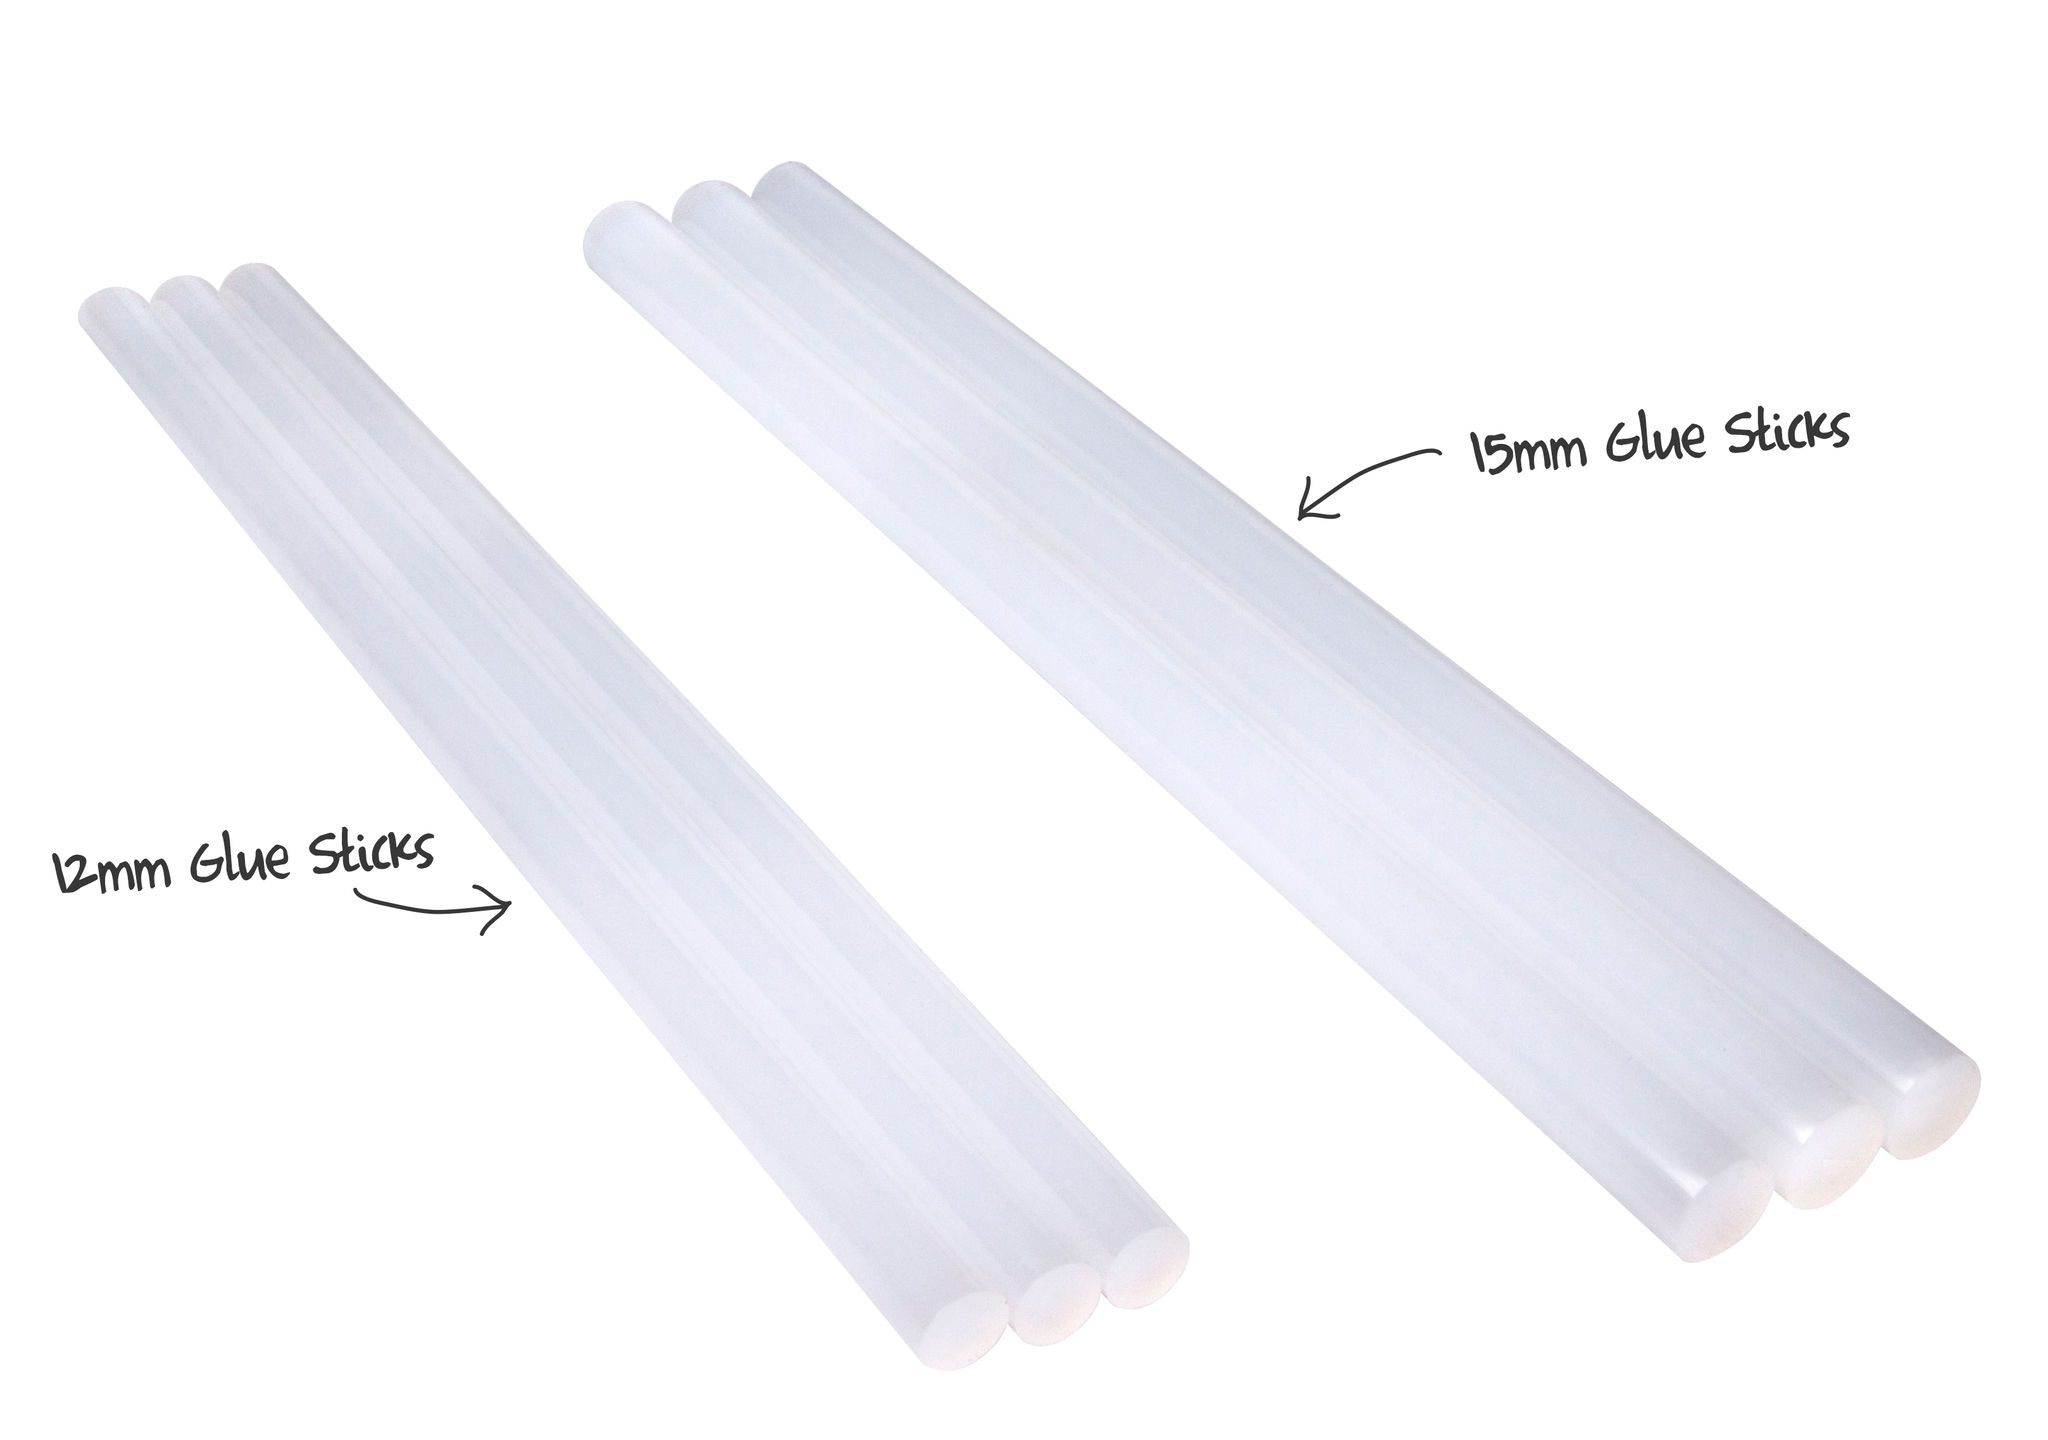 TECBOND 239 / 12mm Ultra Clear Glue Stick - Glue Sticks, Guns